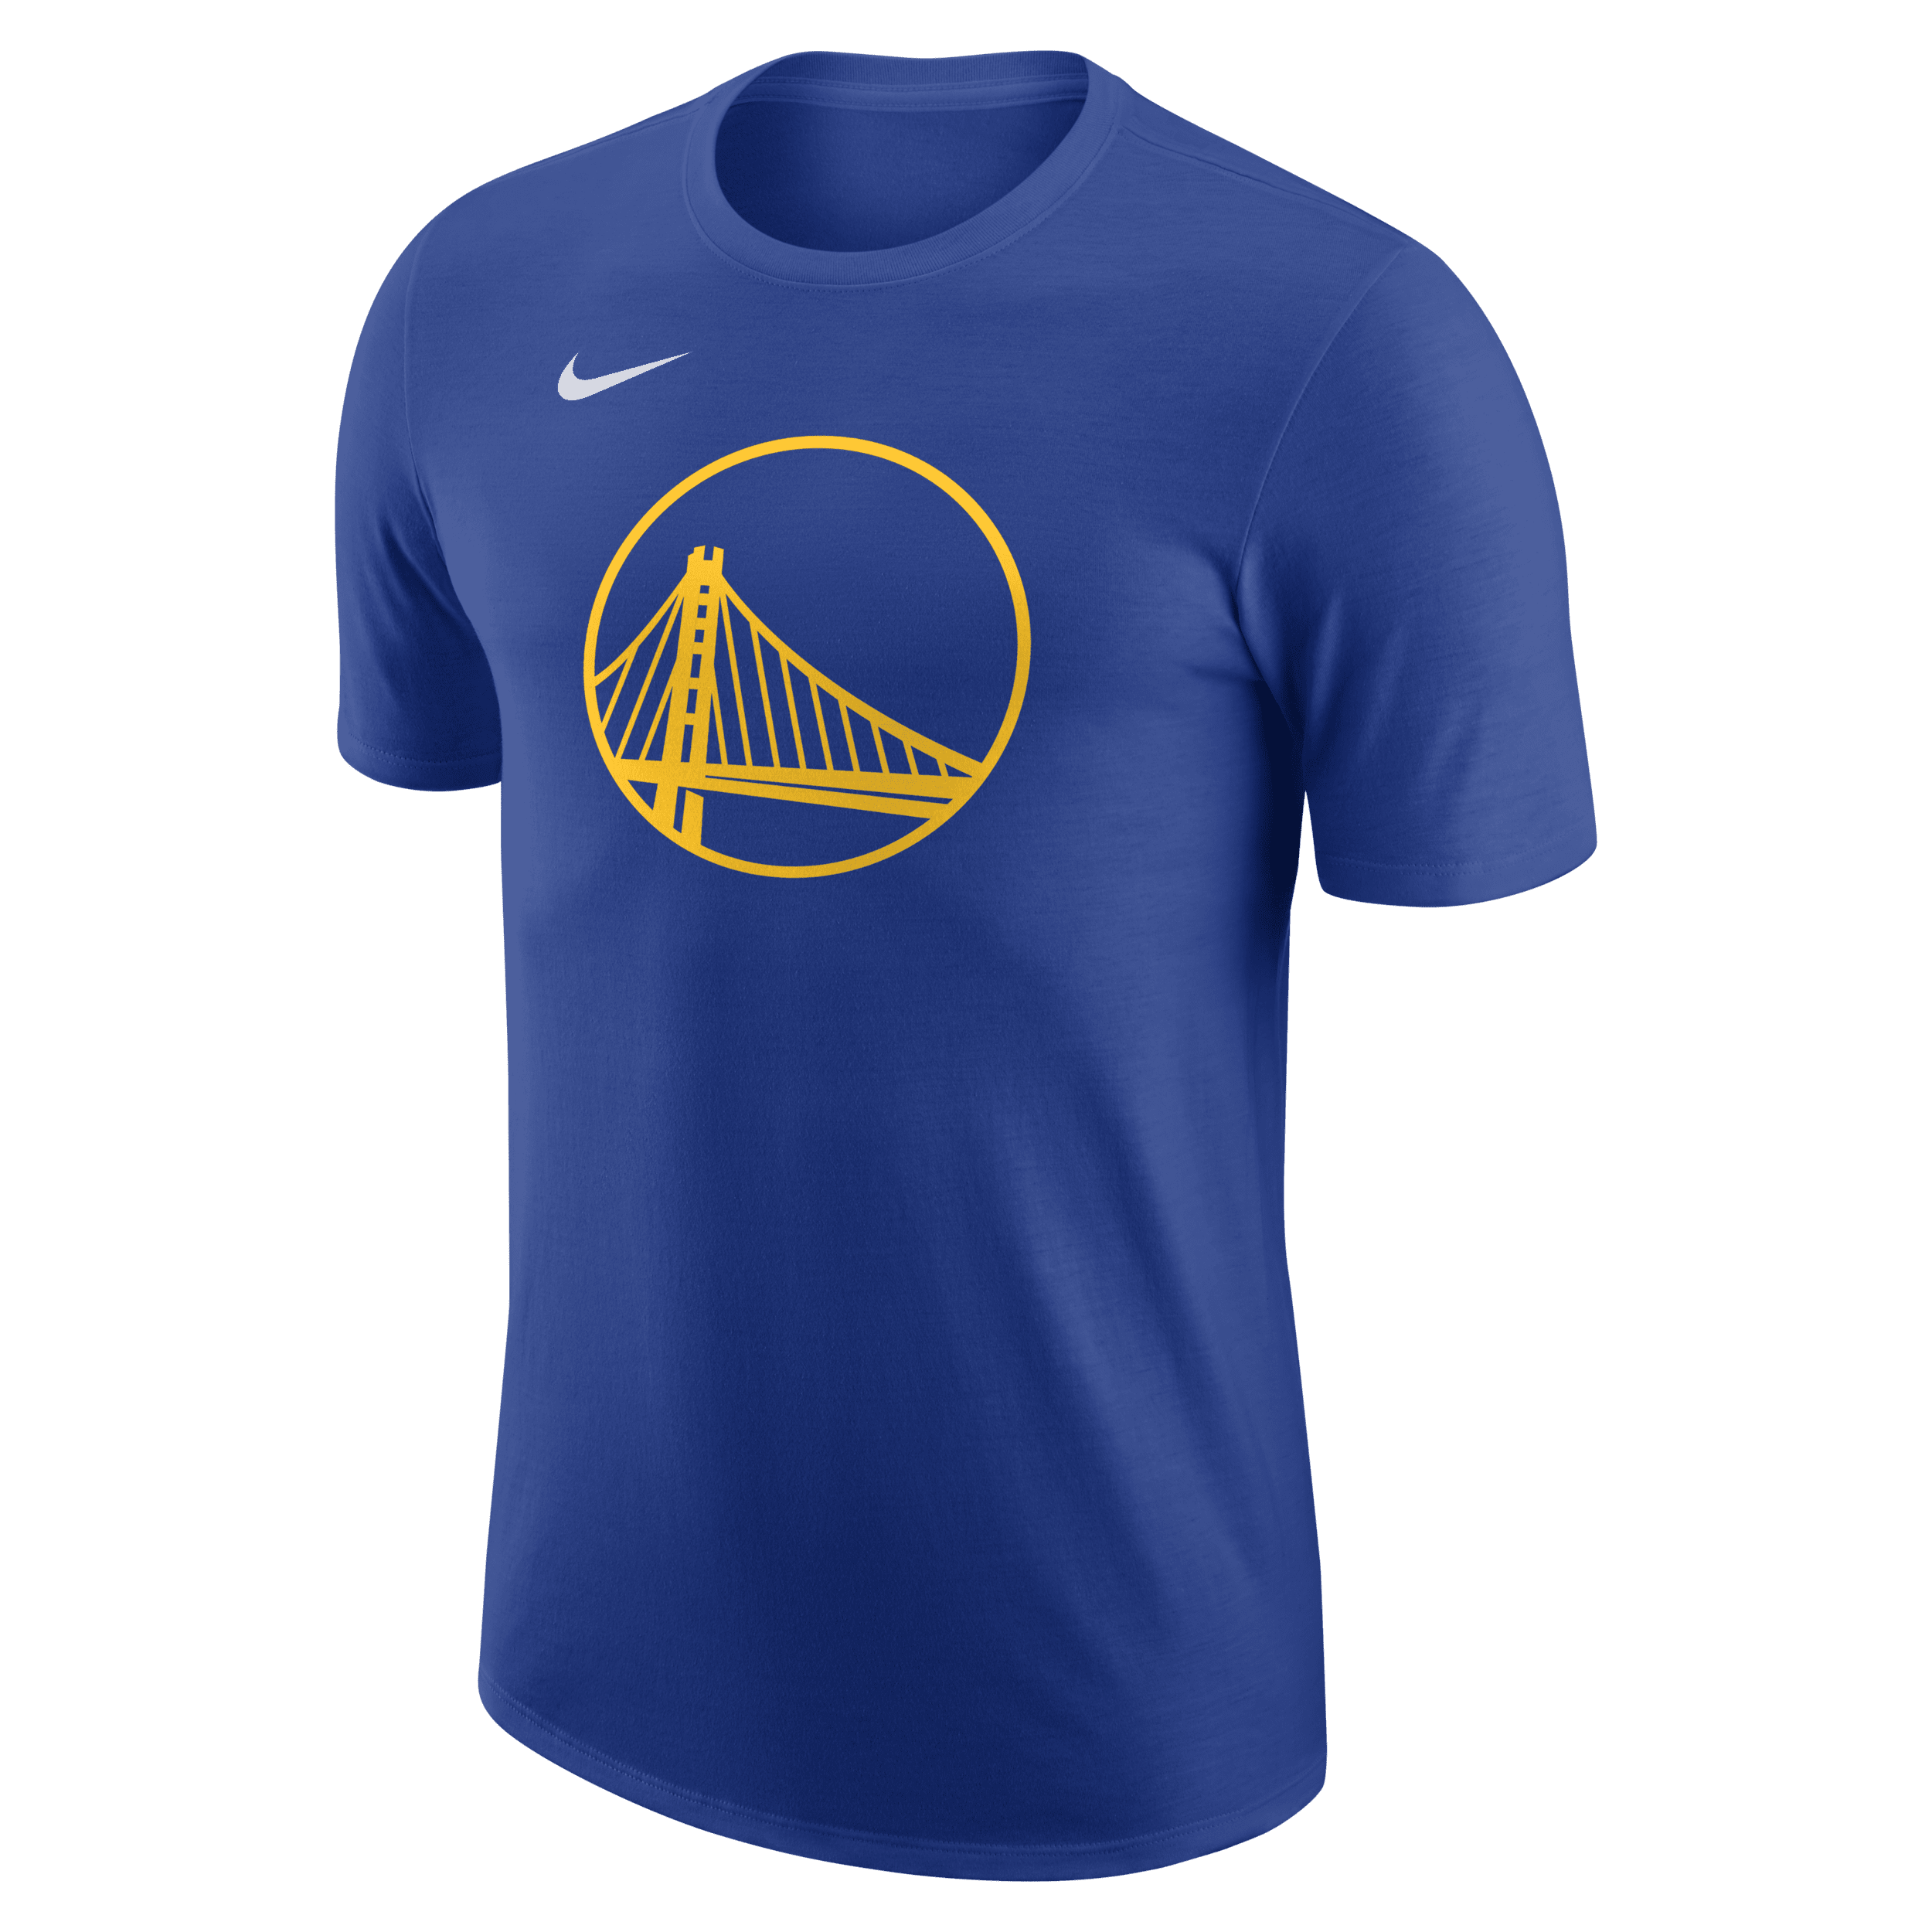 Camiseta Nike Golden State Warriors Masculina